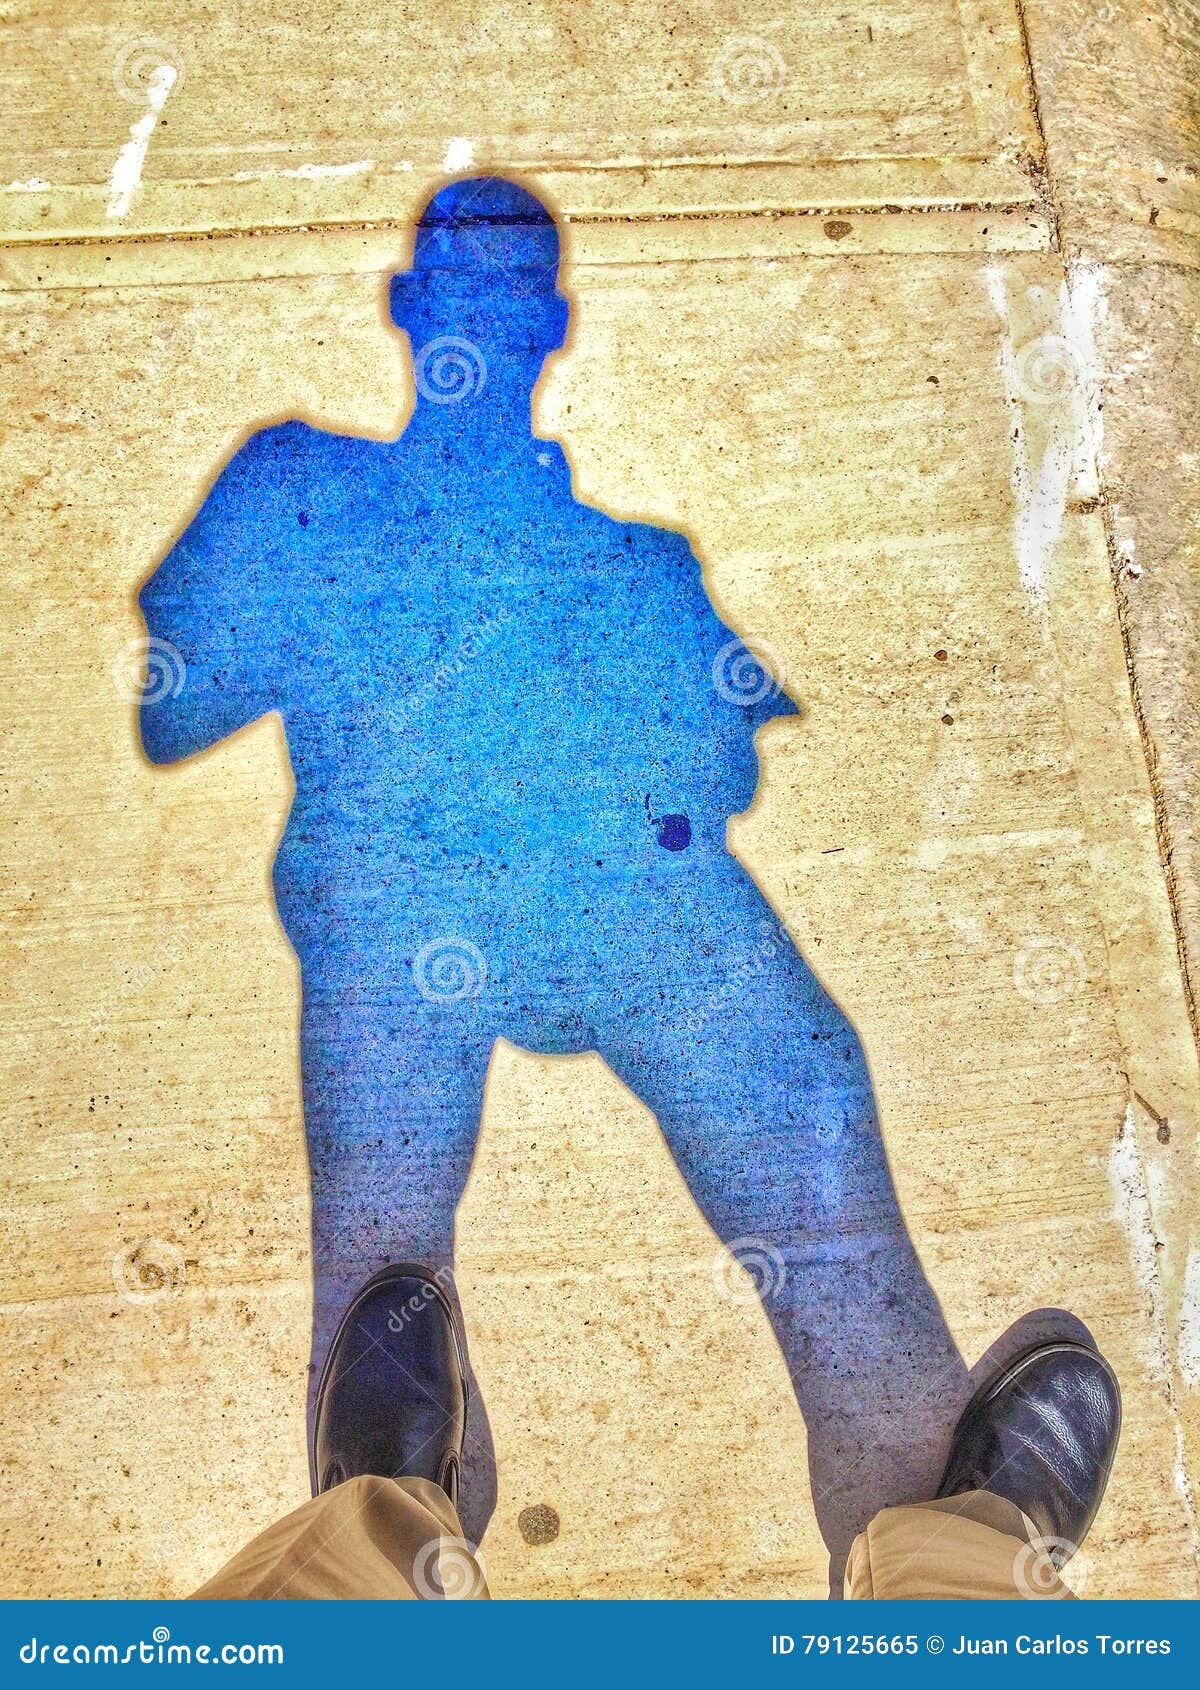 sombra blue